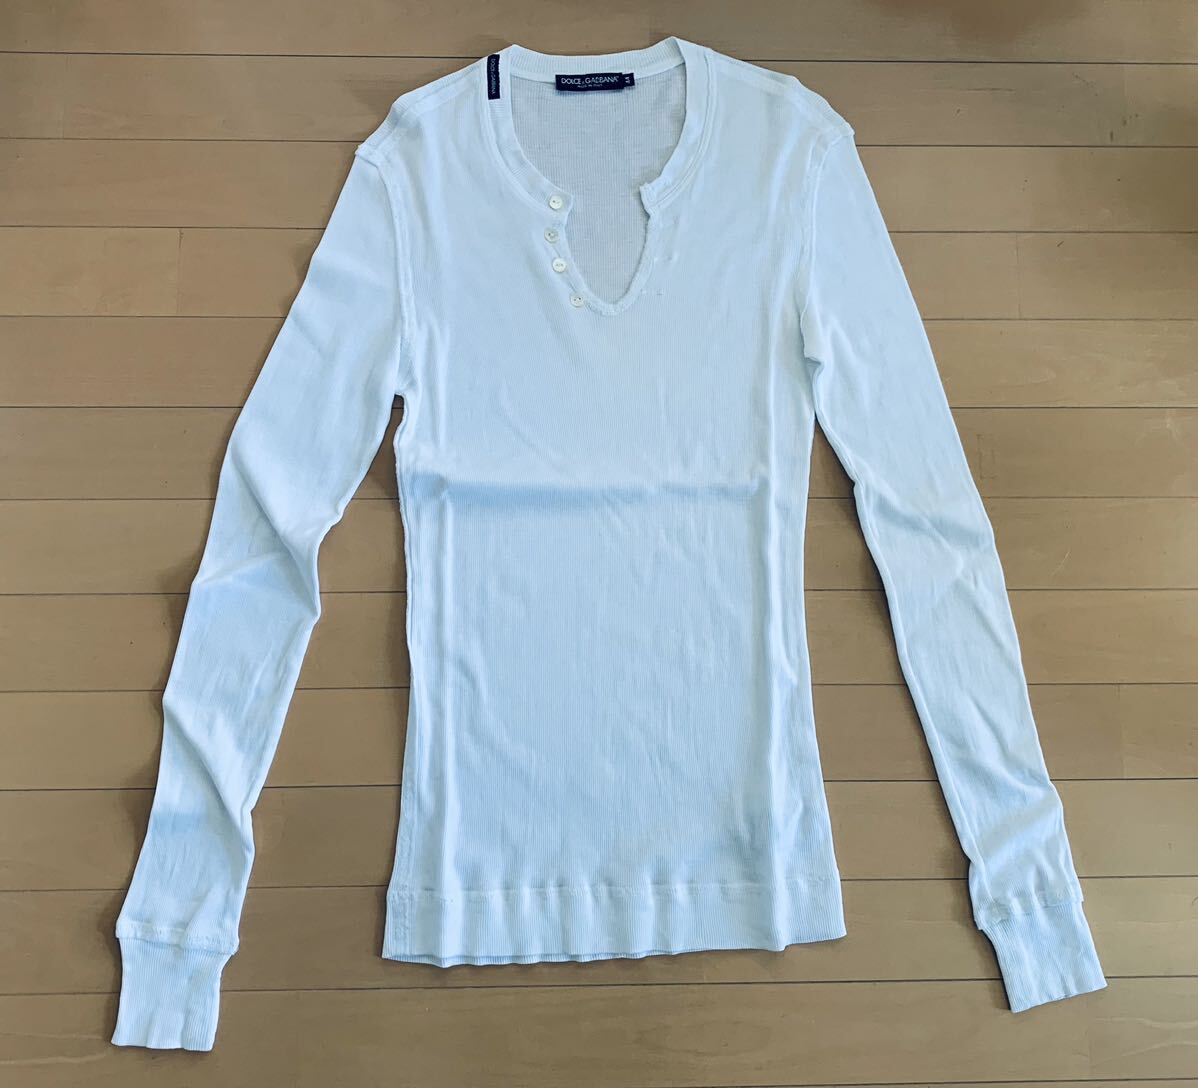 ドルチェ&ガッバーナ DG 白 リブ STRETCH デザイン ネックボタン 長袖 カットソー ロンT Tシャツ 綺麗の画像1